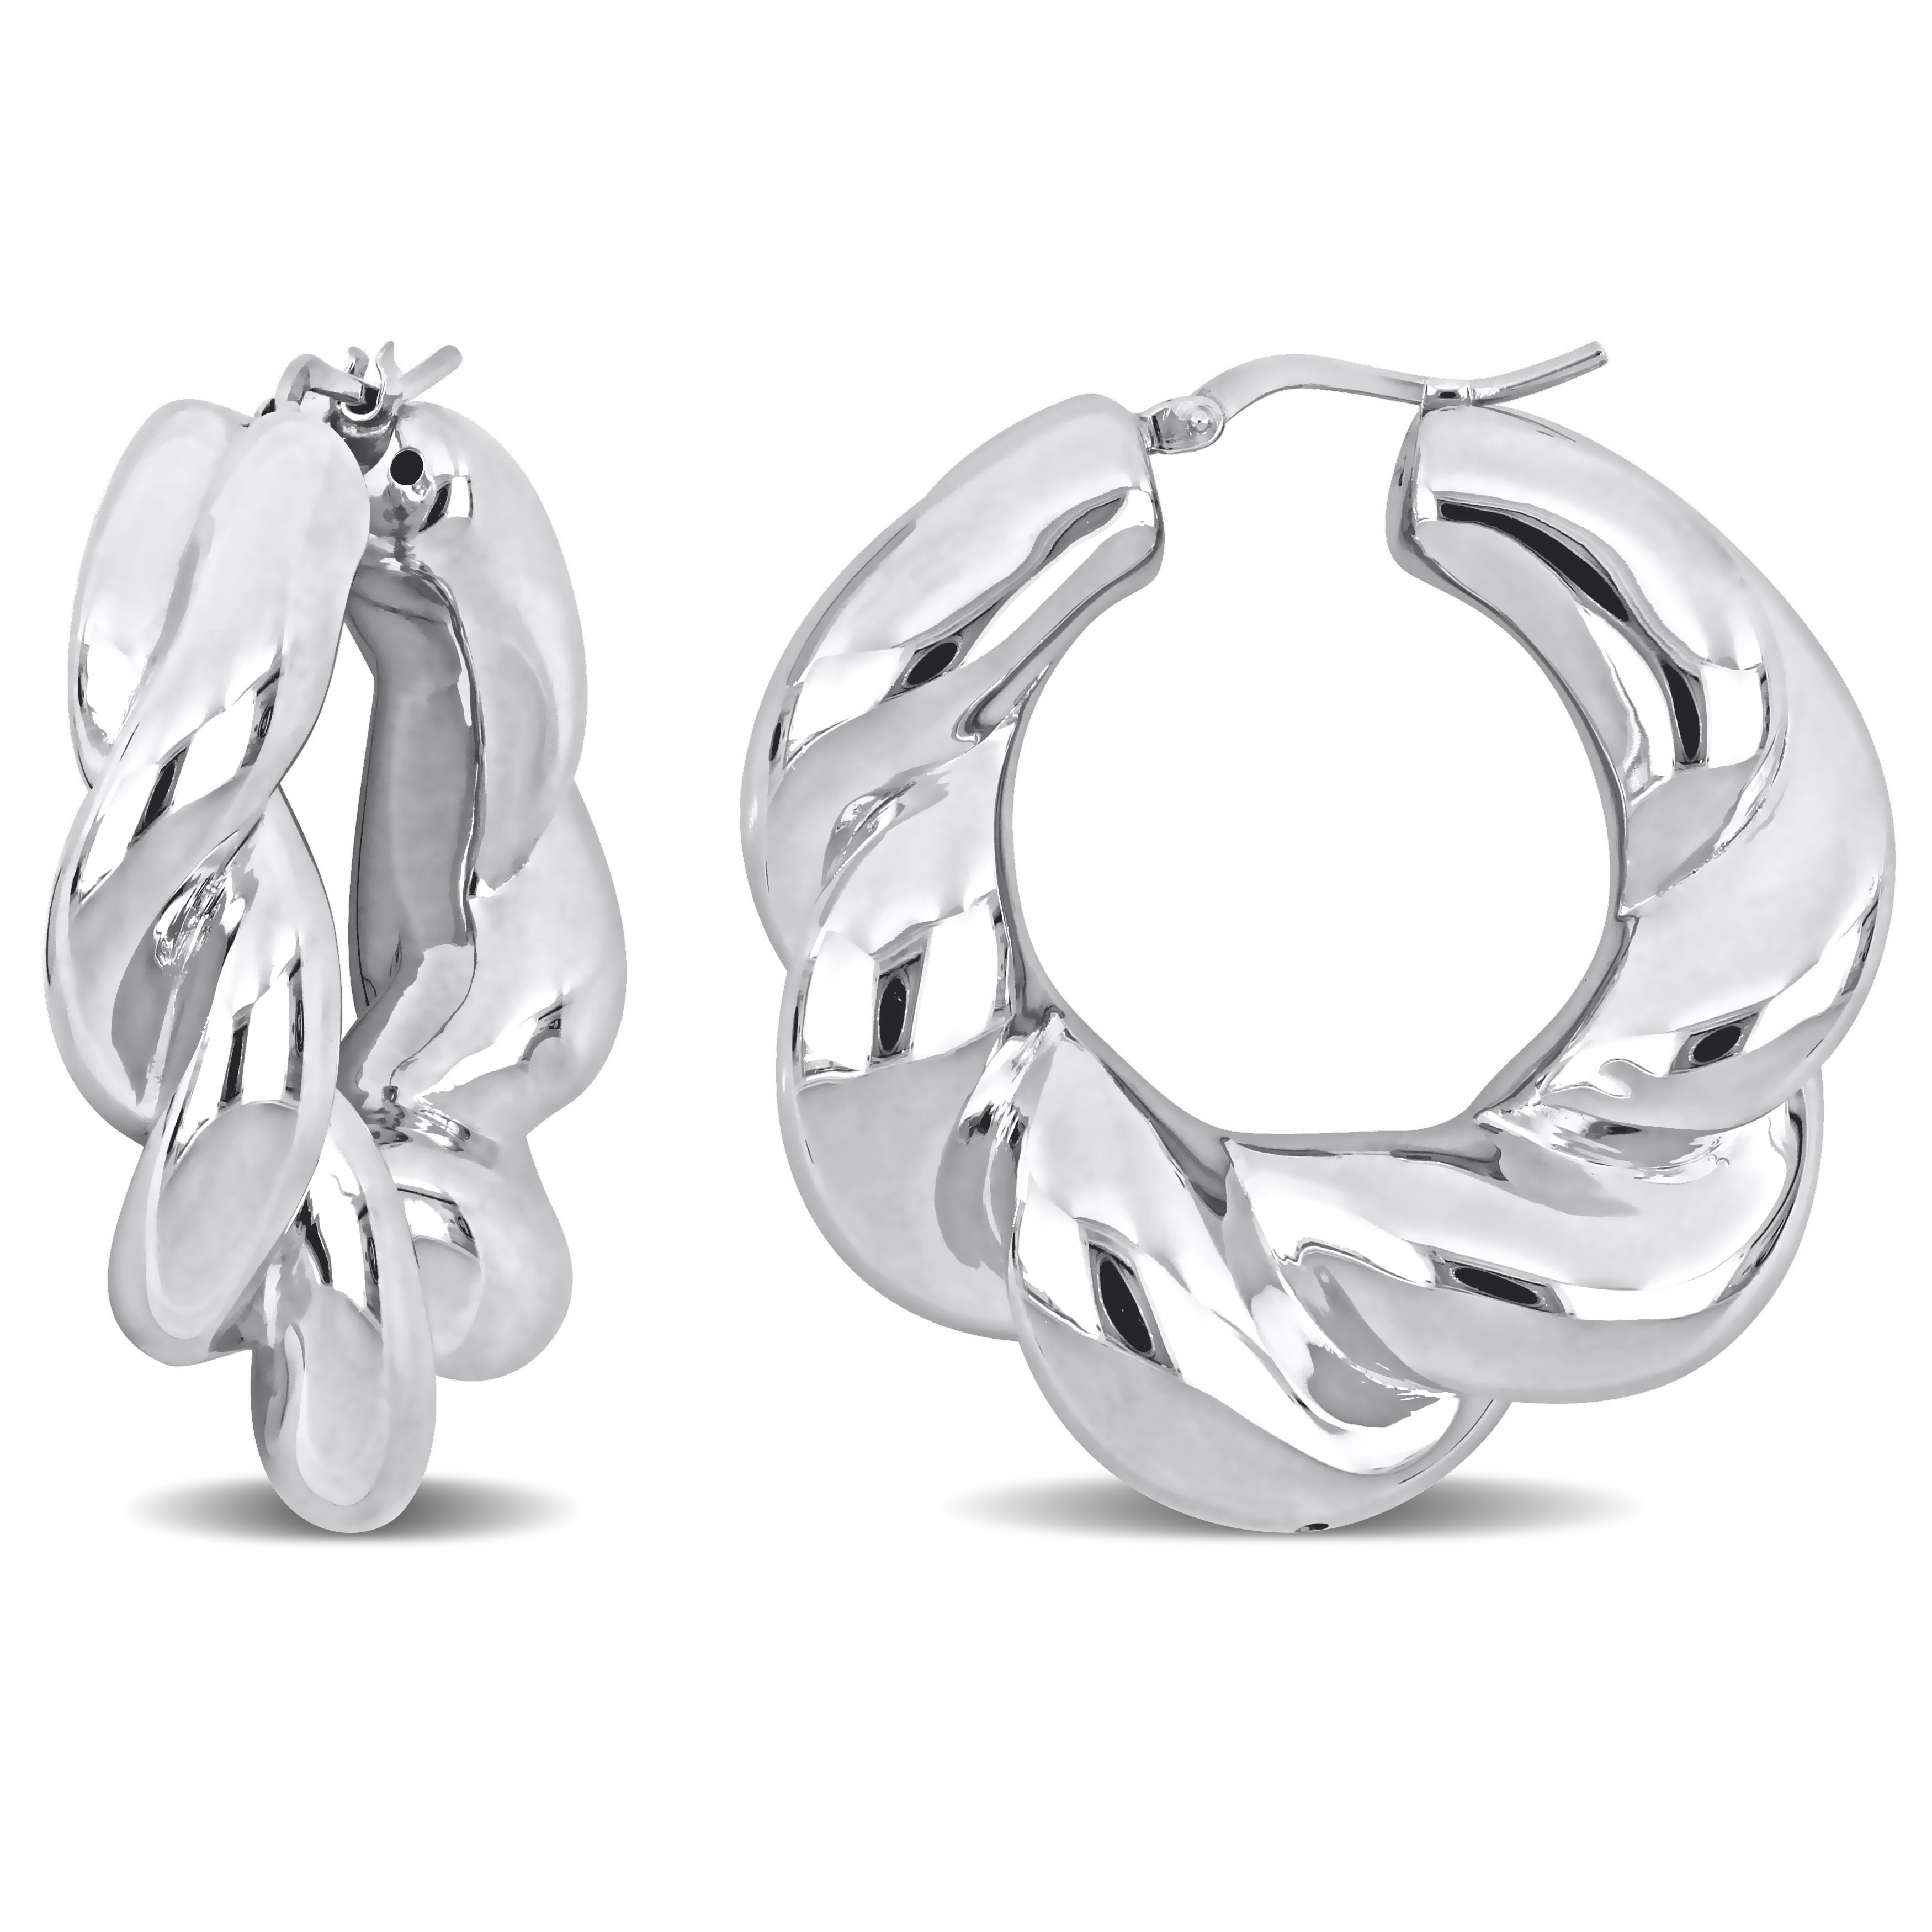 39 MM Twisted Hoop Earrings in Sterling Silver